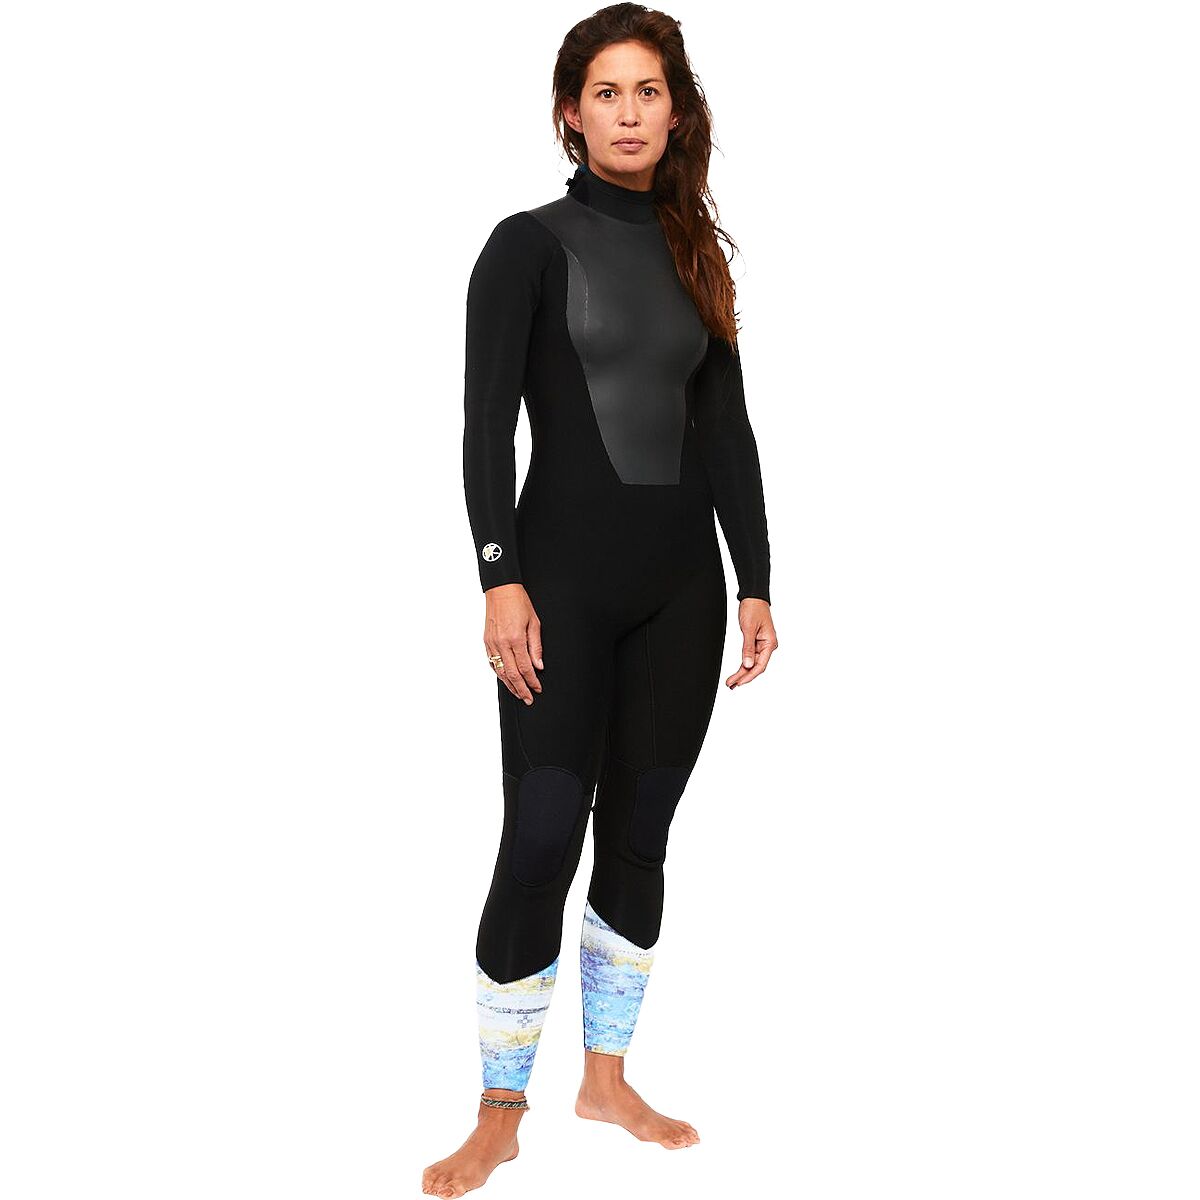 Kassia Surf 4/3 Of Earth Back-Zip Wetsuit - Women's